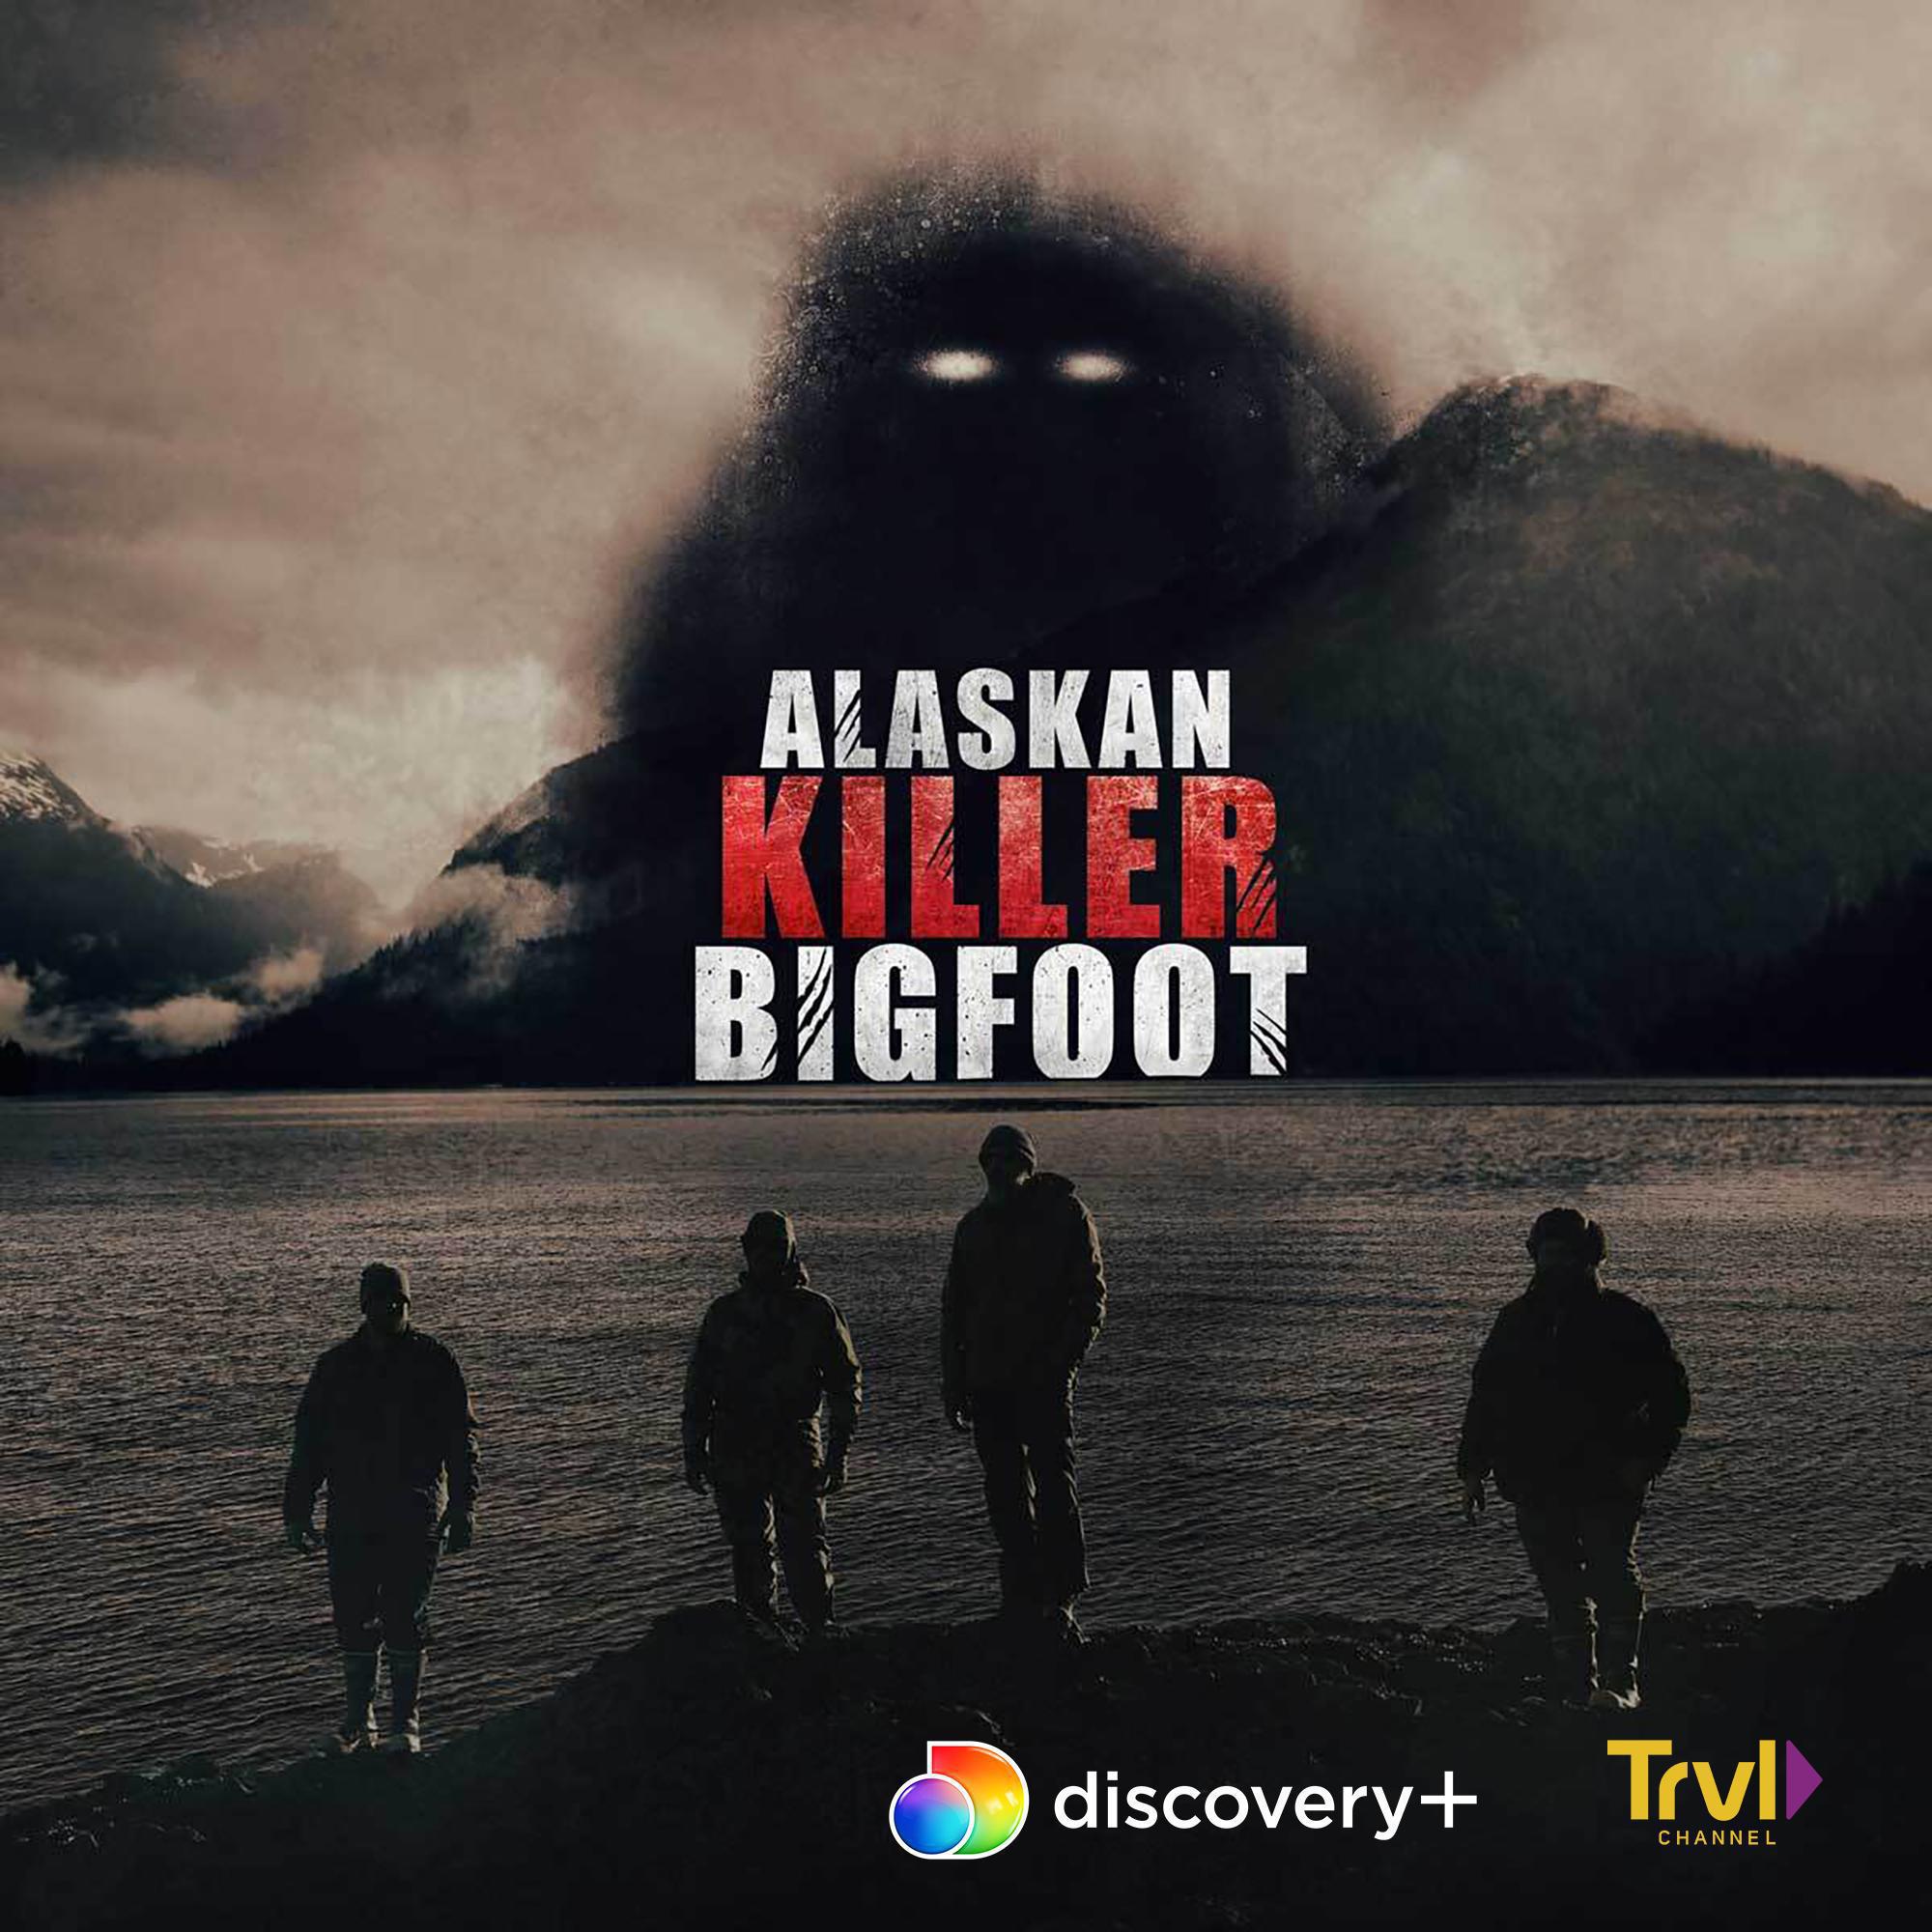 TV ratings for Alaskan Killer Bigfoot in France. Discovery+ TV series